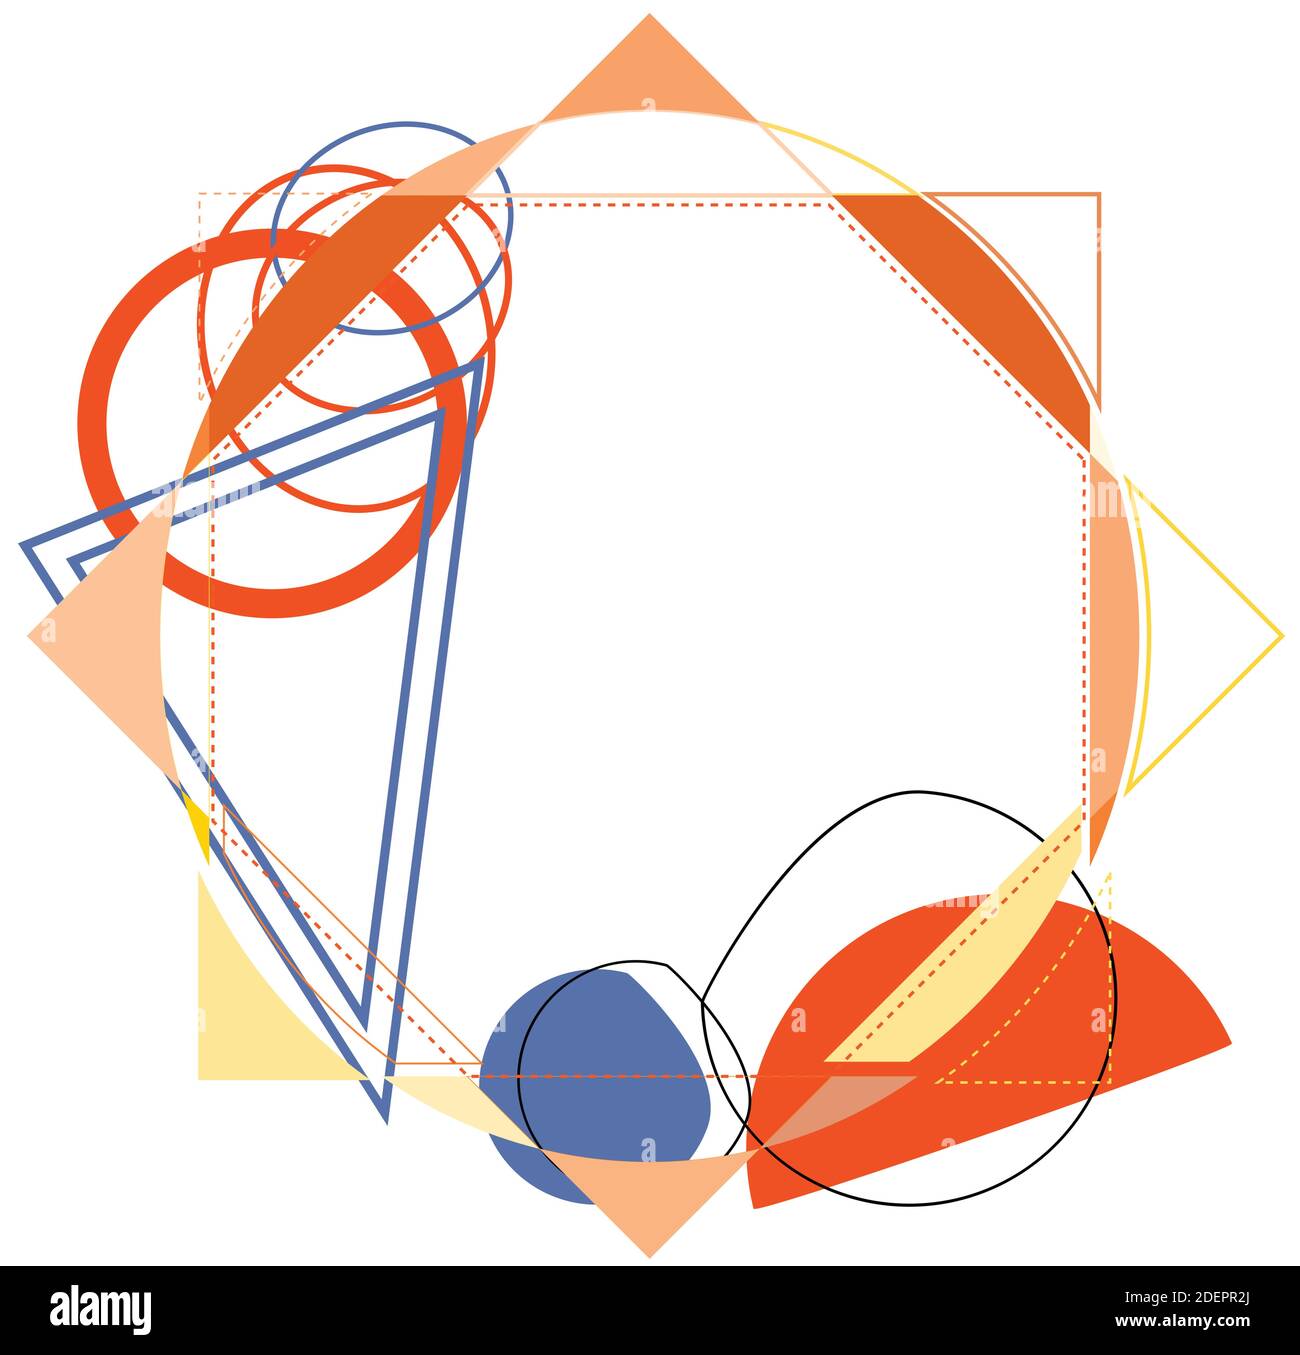 Abstrakter Rahmen mit dem Durcheinander von geometrischen Formen. Inspiriert von abstrakter Kunst der Avantgarde Stock Vektor